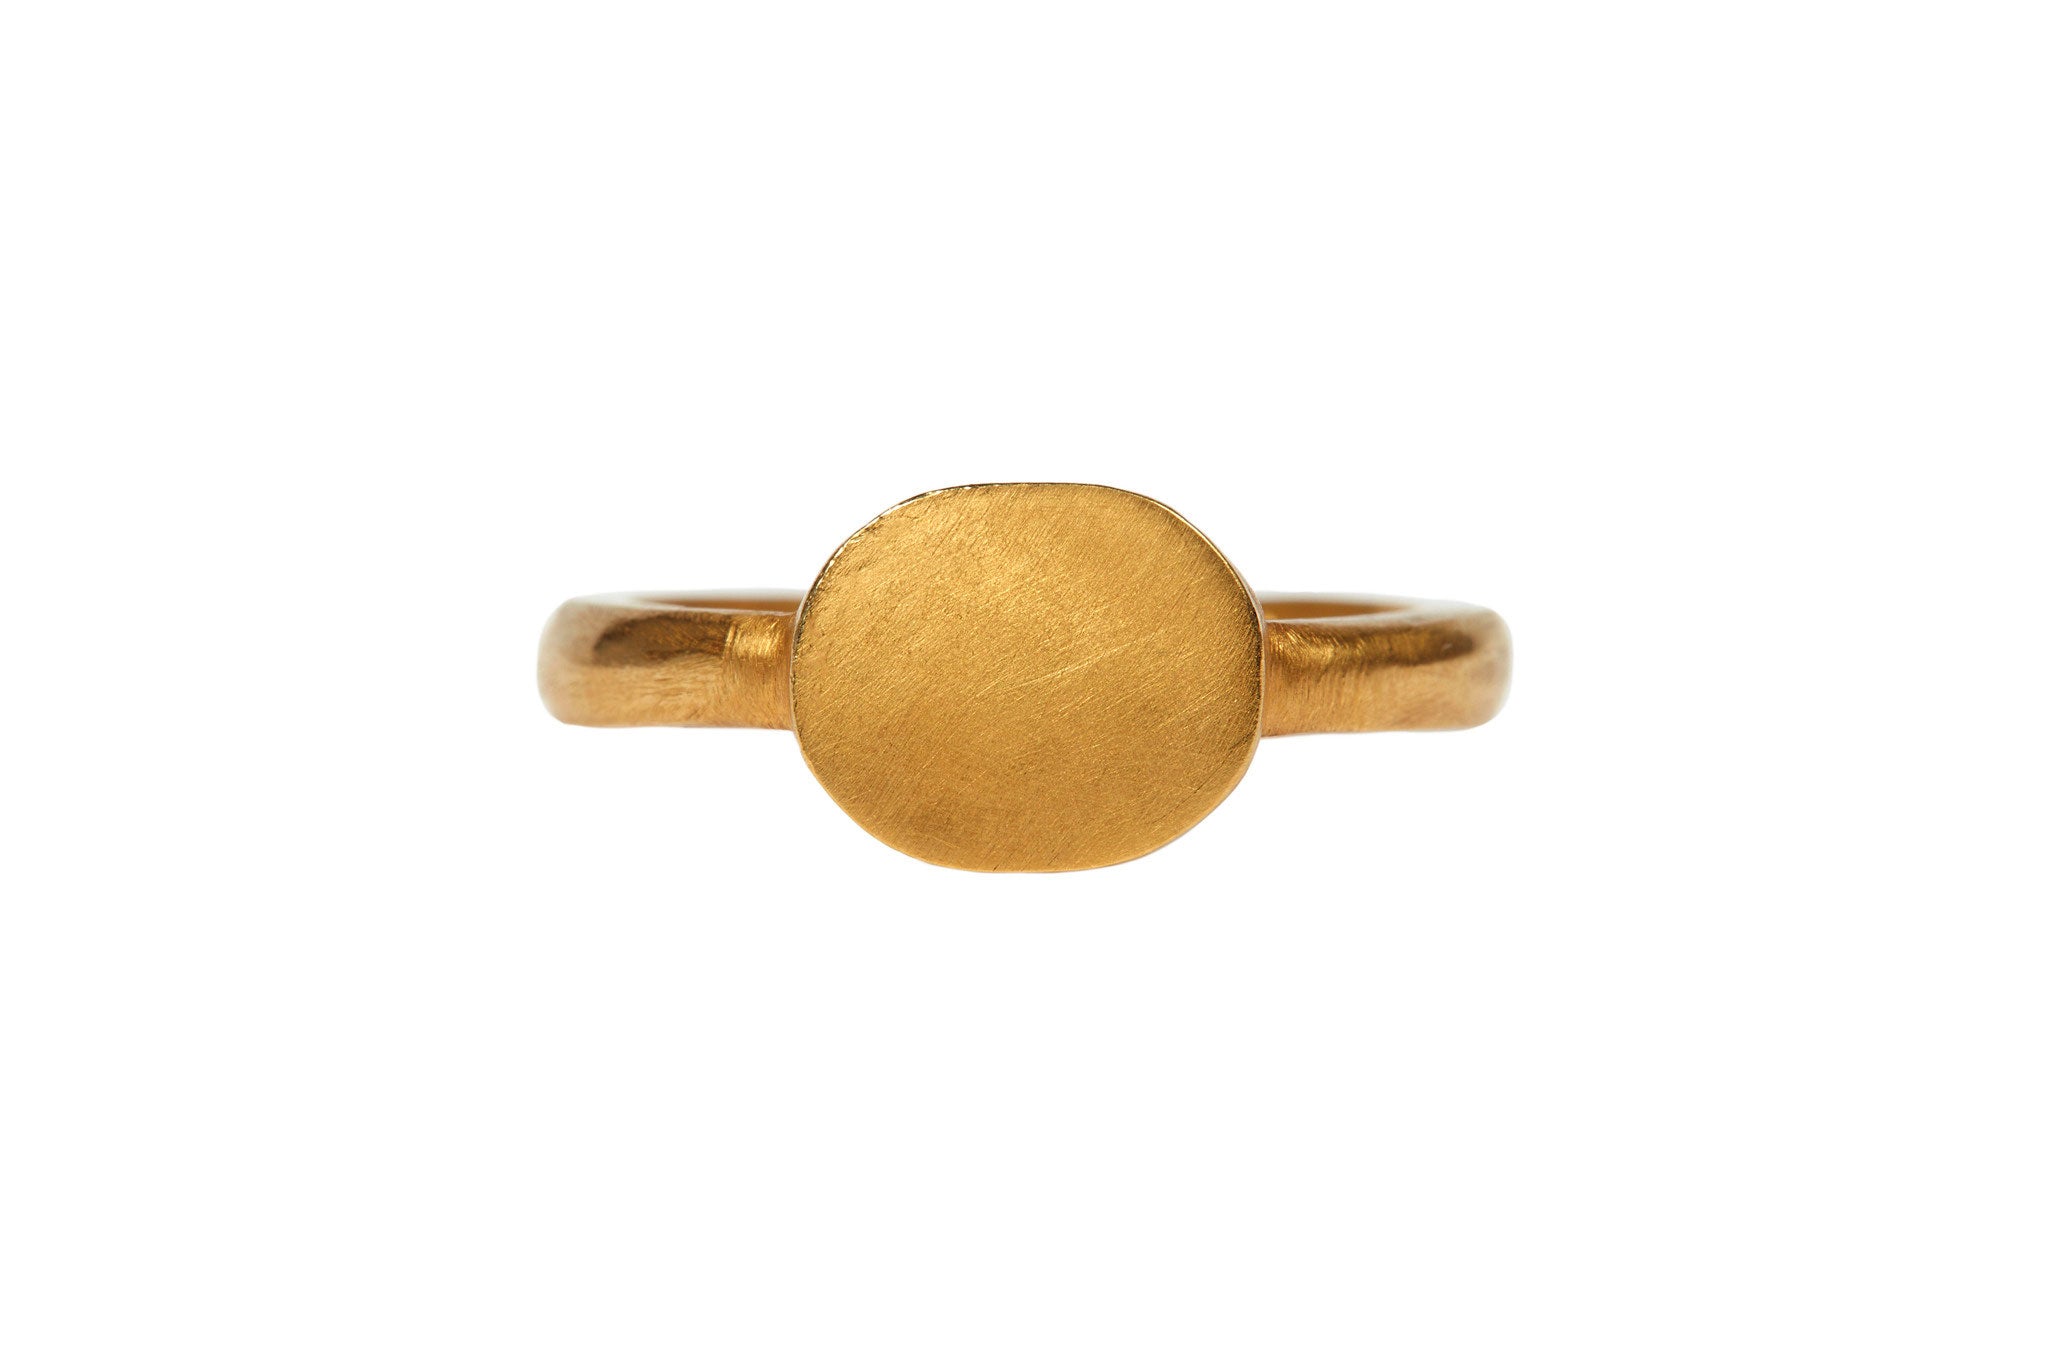 darius jewels hand made fine jewelry 18k yellow gold signet ring v.3 darius khonsary